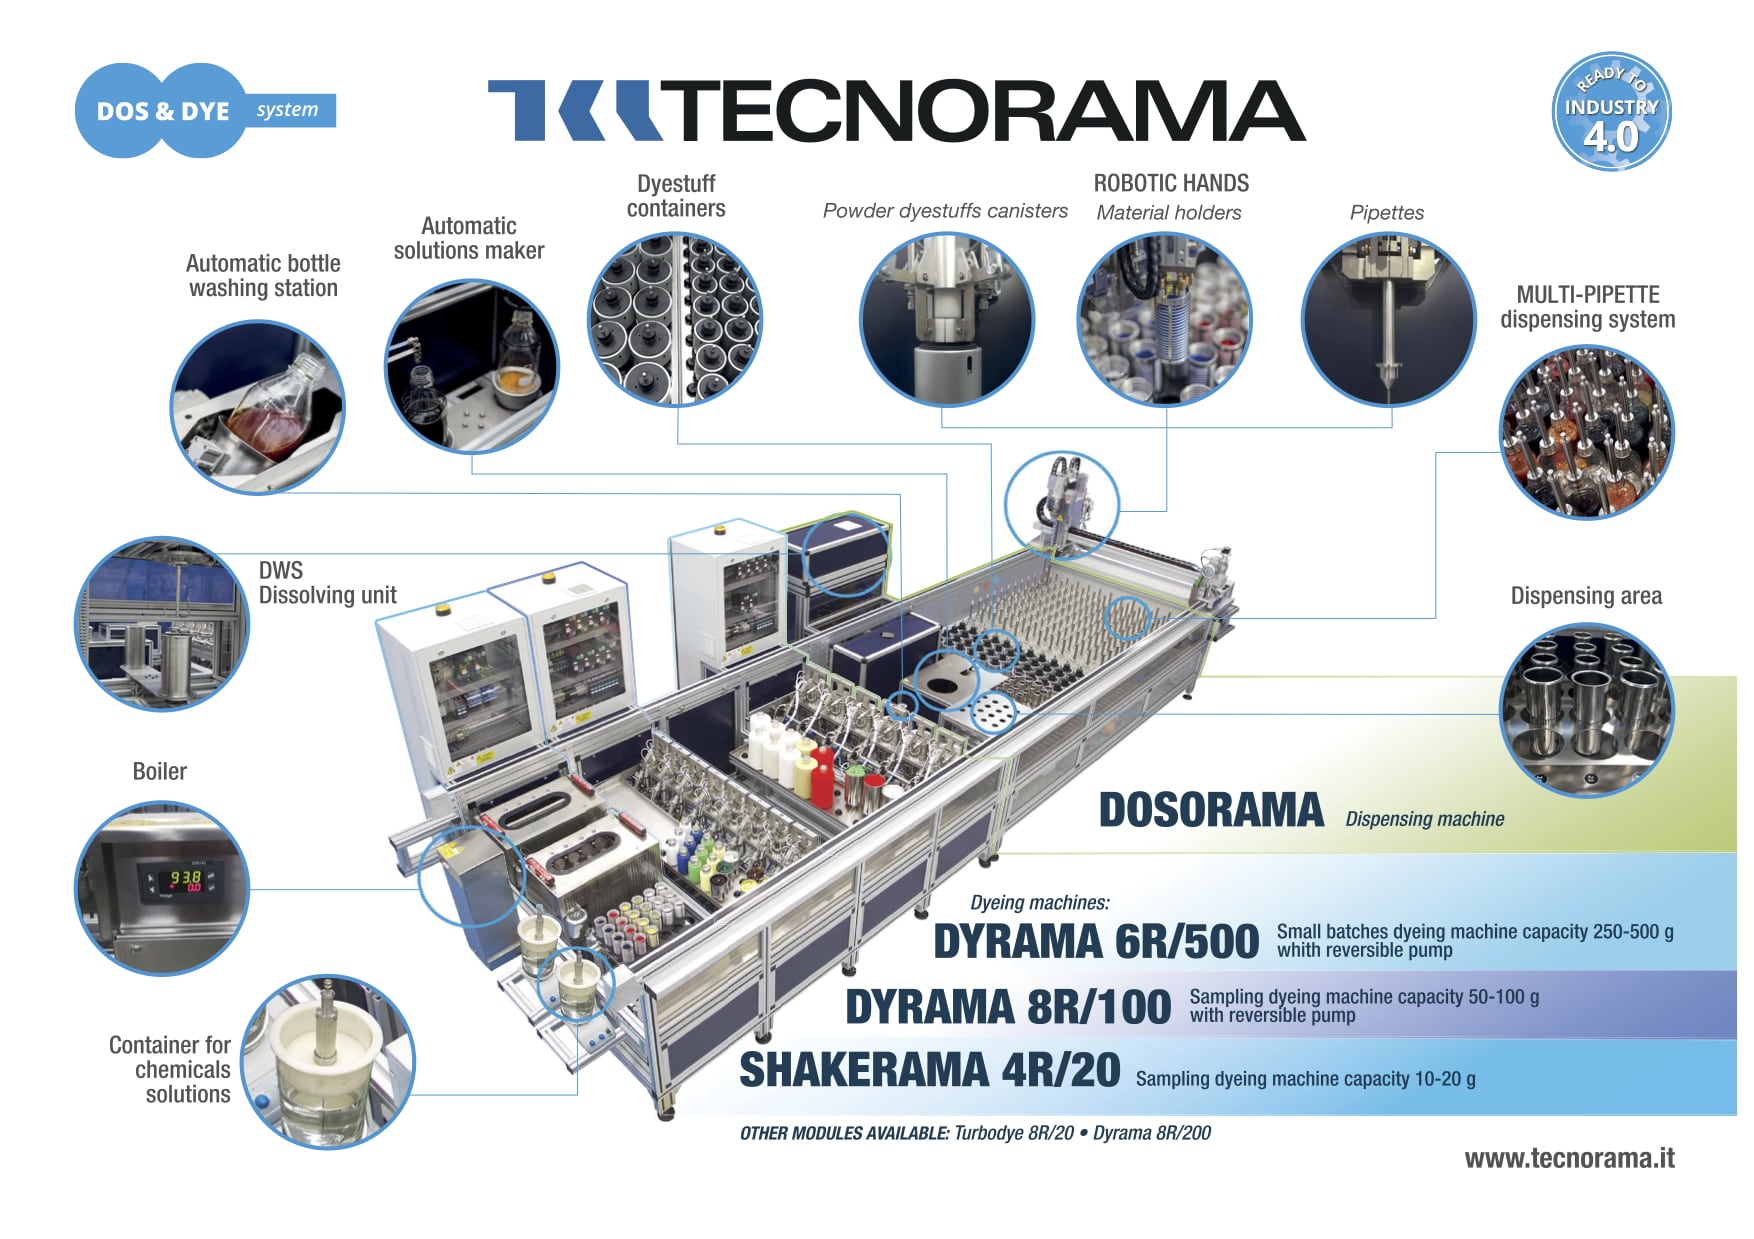 Tecnorama-DosDye-with-descriptions-2019-04-04-ENG-LR